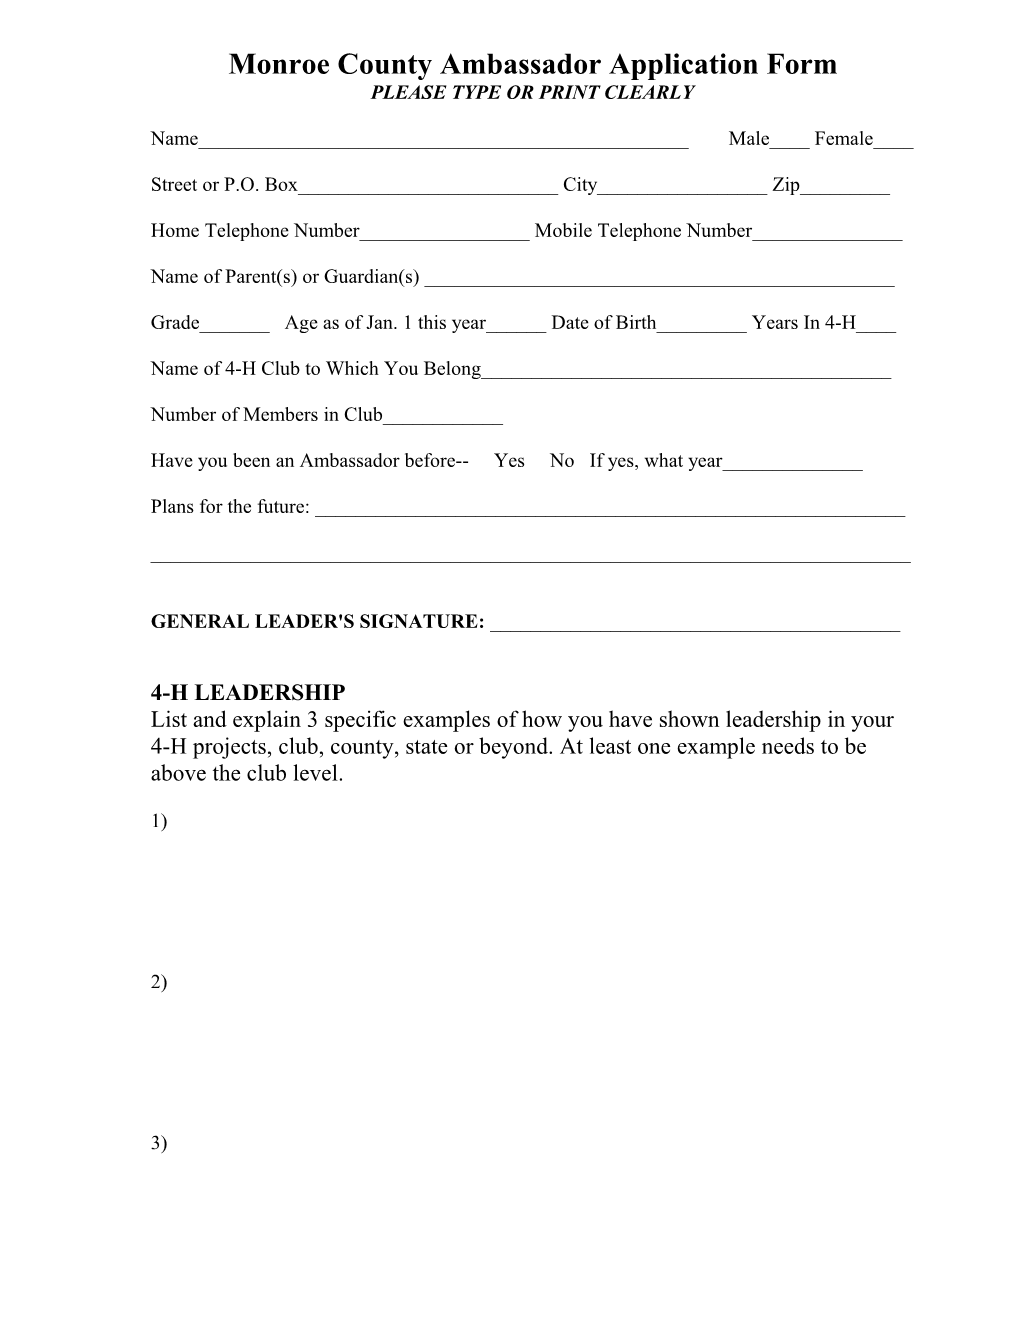 Monroe County Ambassador Application Form